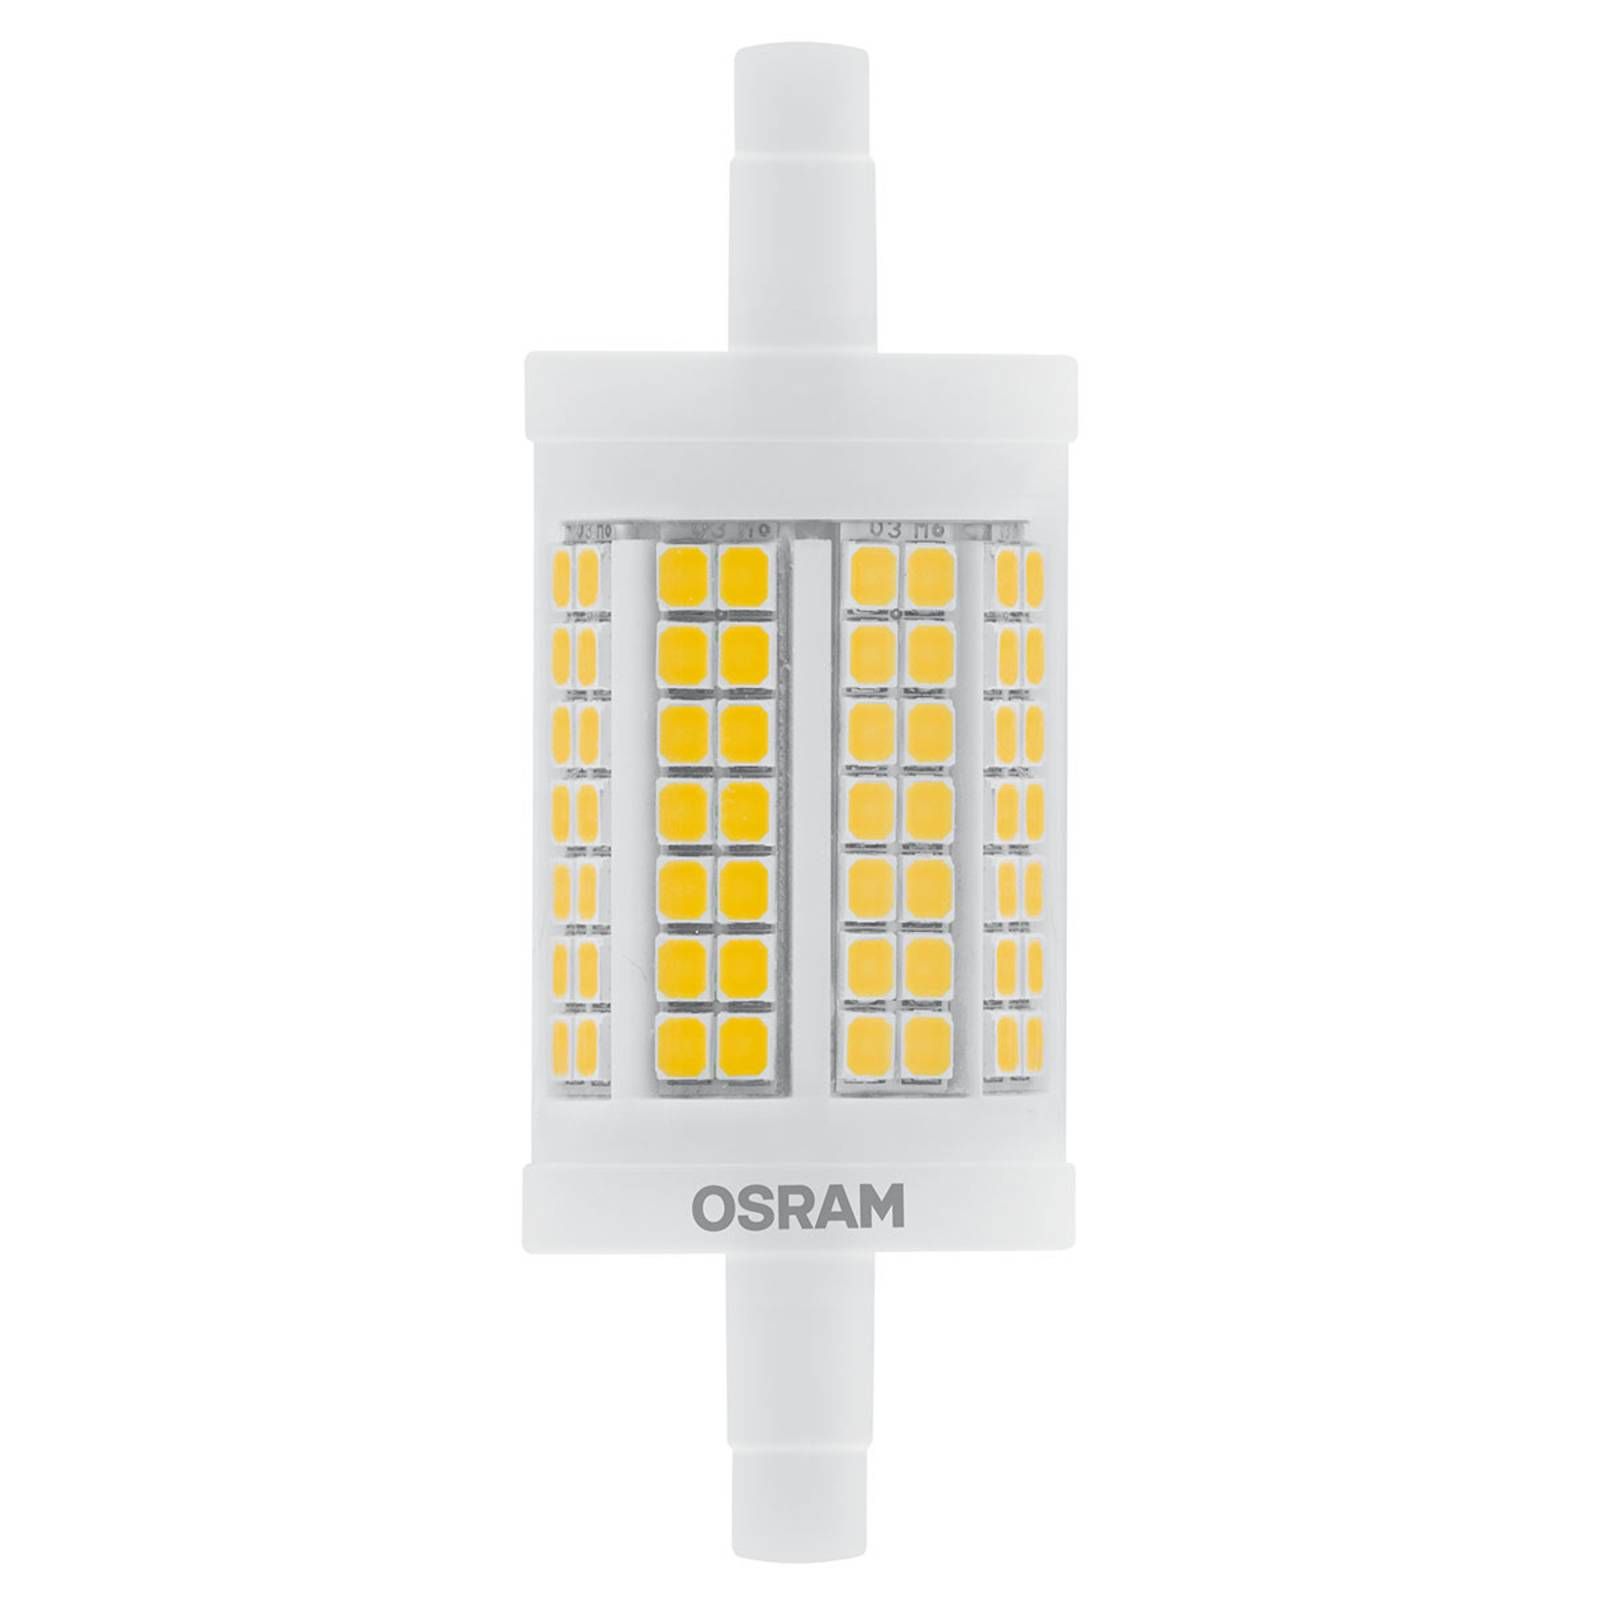 OSRAM LED žiarovka R7s 12W teplá biela, 1.521 lm, R7s, 11.5W, Energialuokka: E, P: 7.8 cm